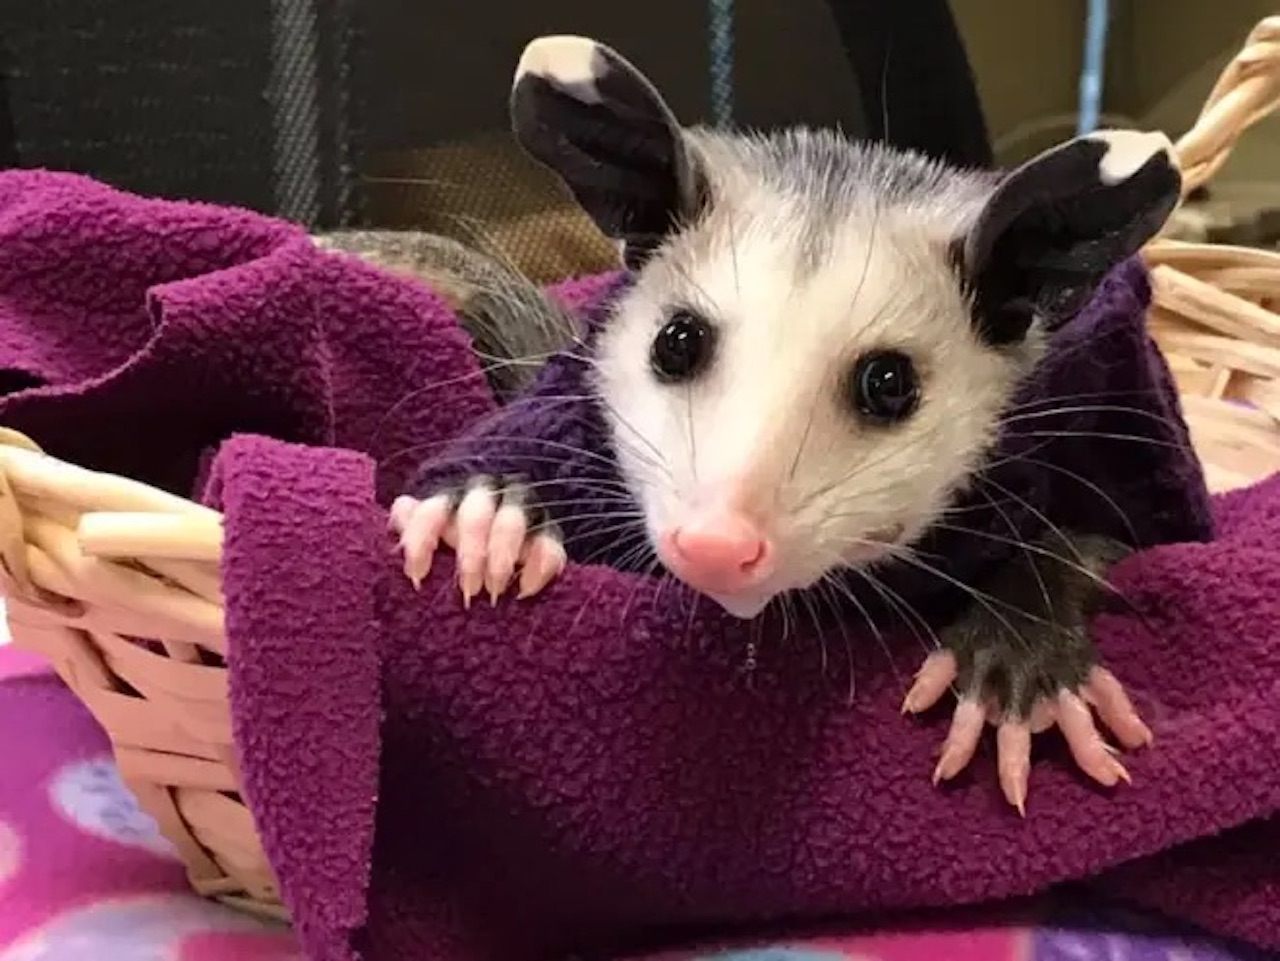 opossum senza peli